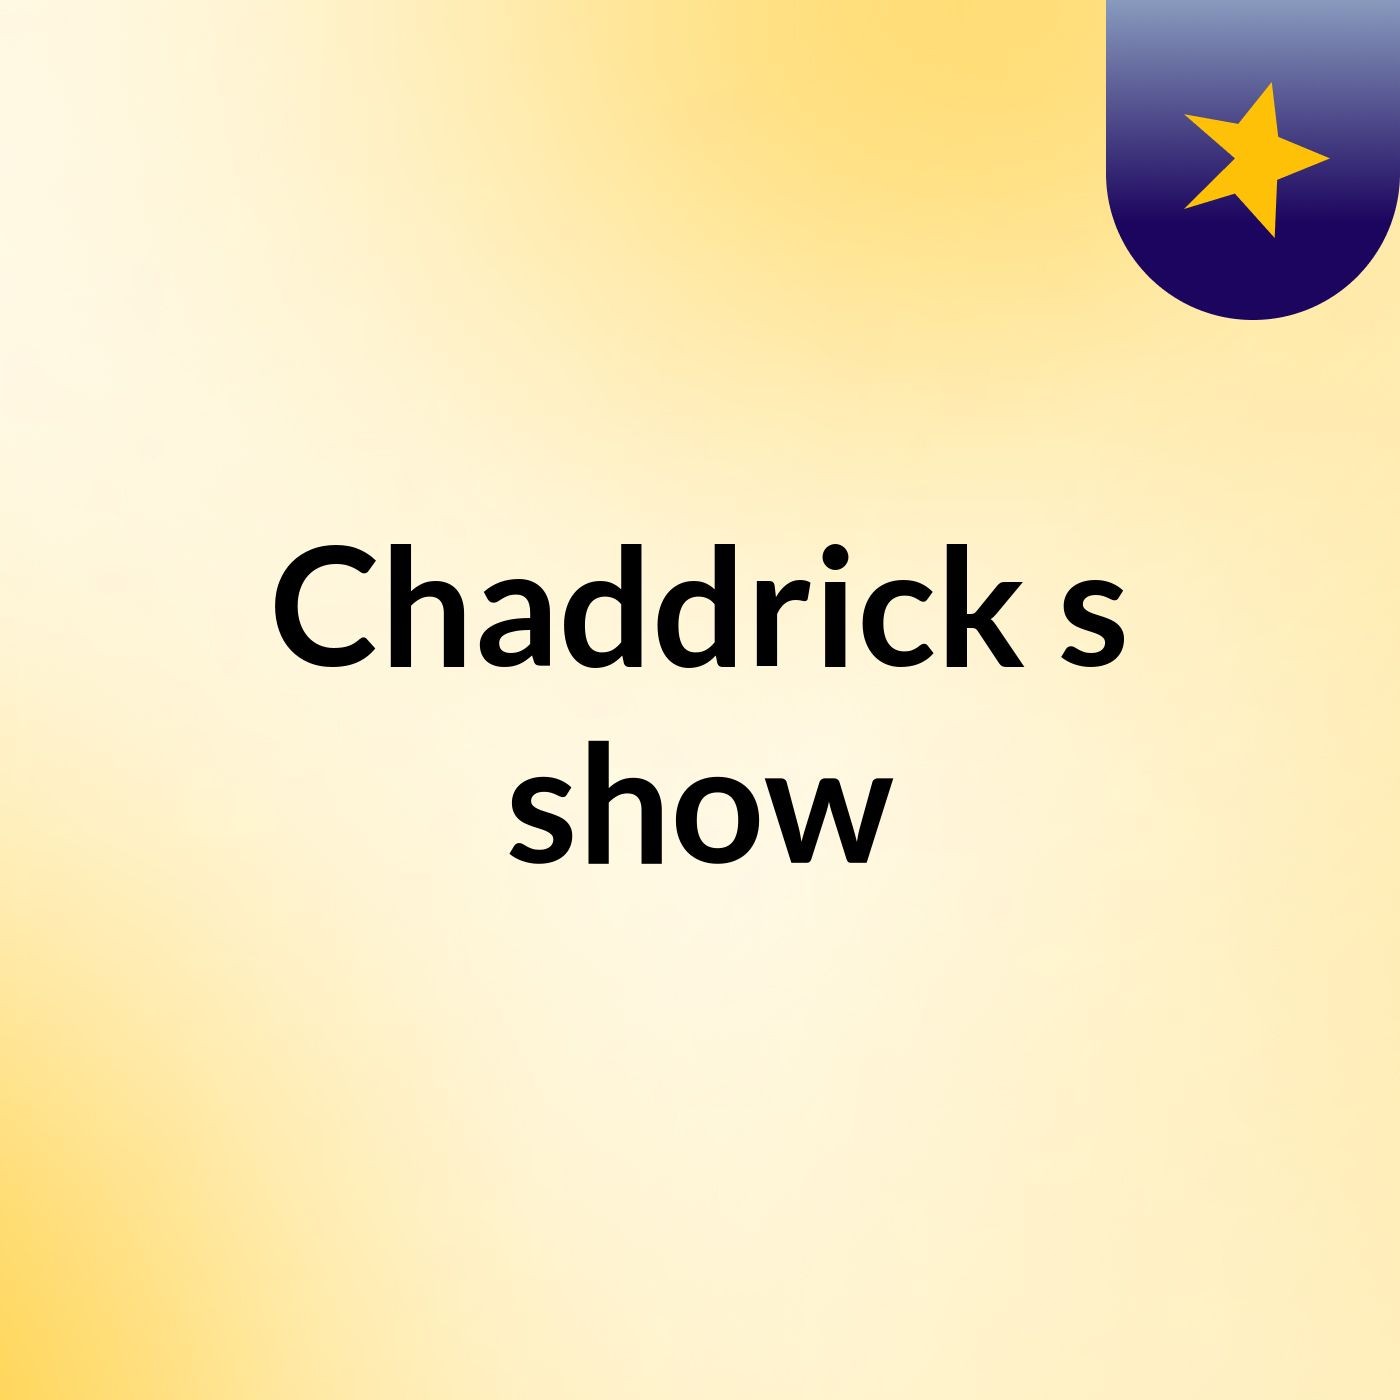 Chaddrick's show